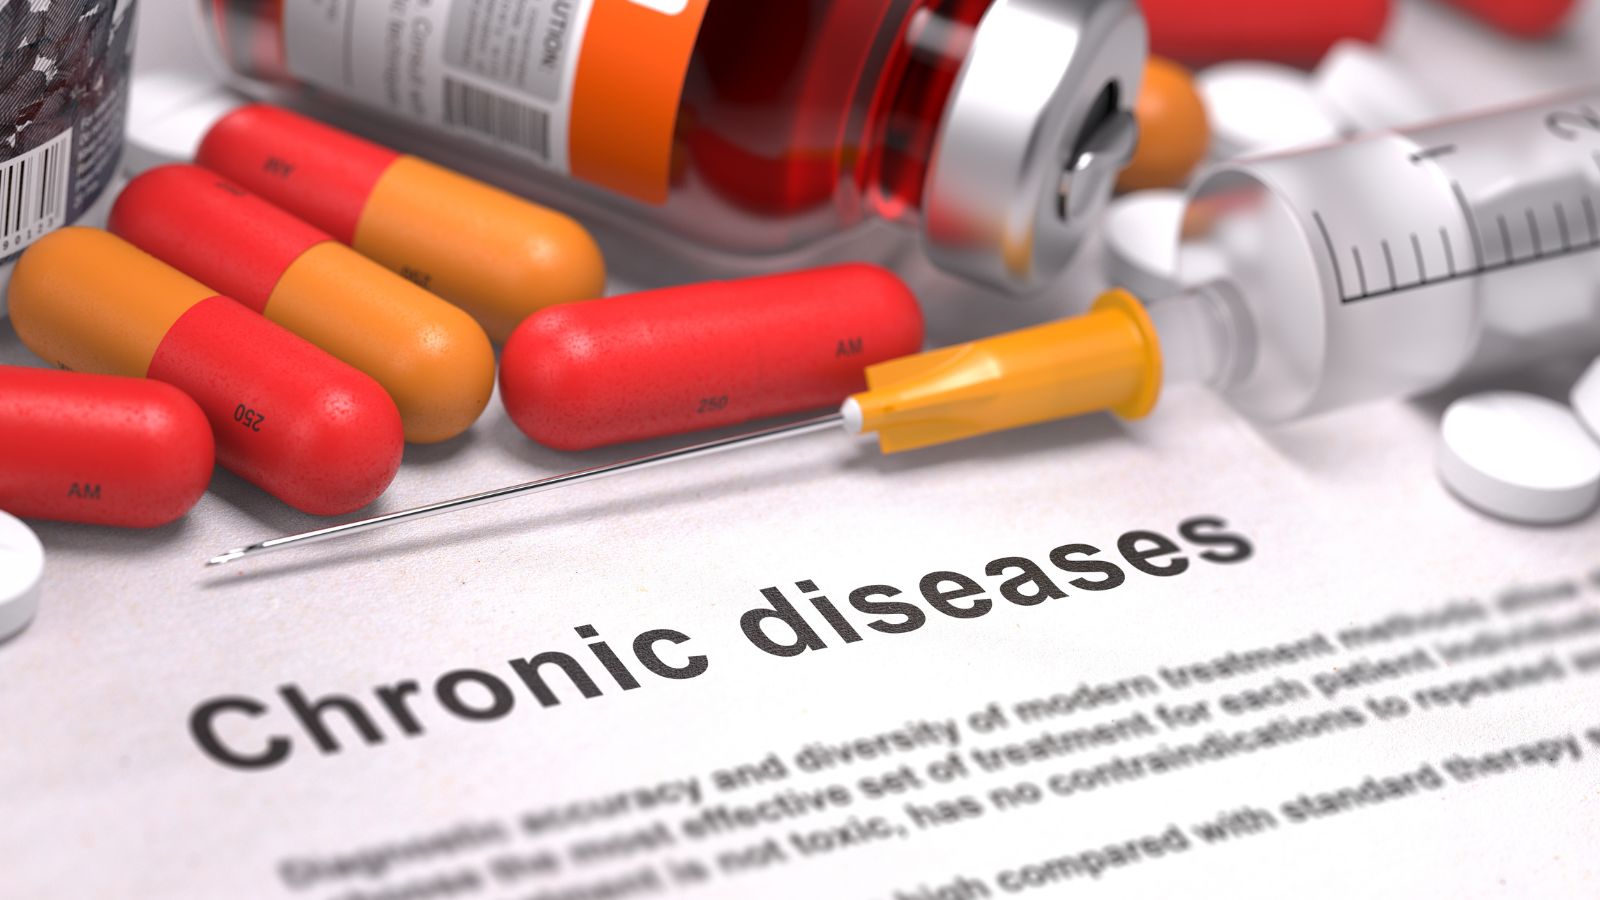 Chronic diseases